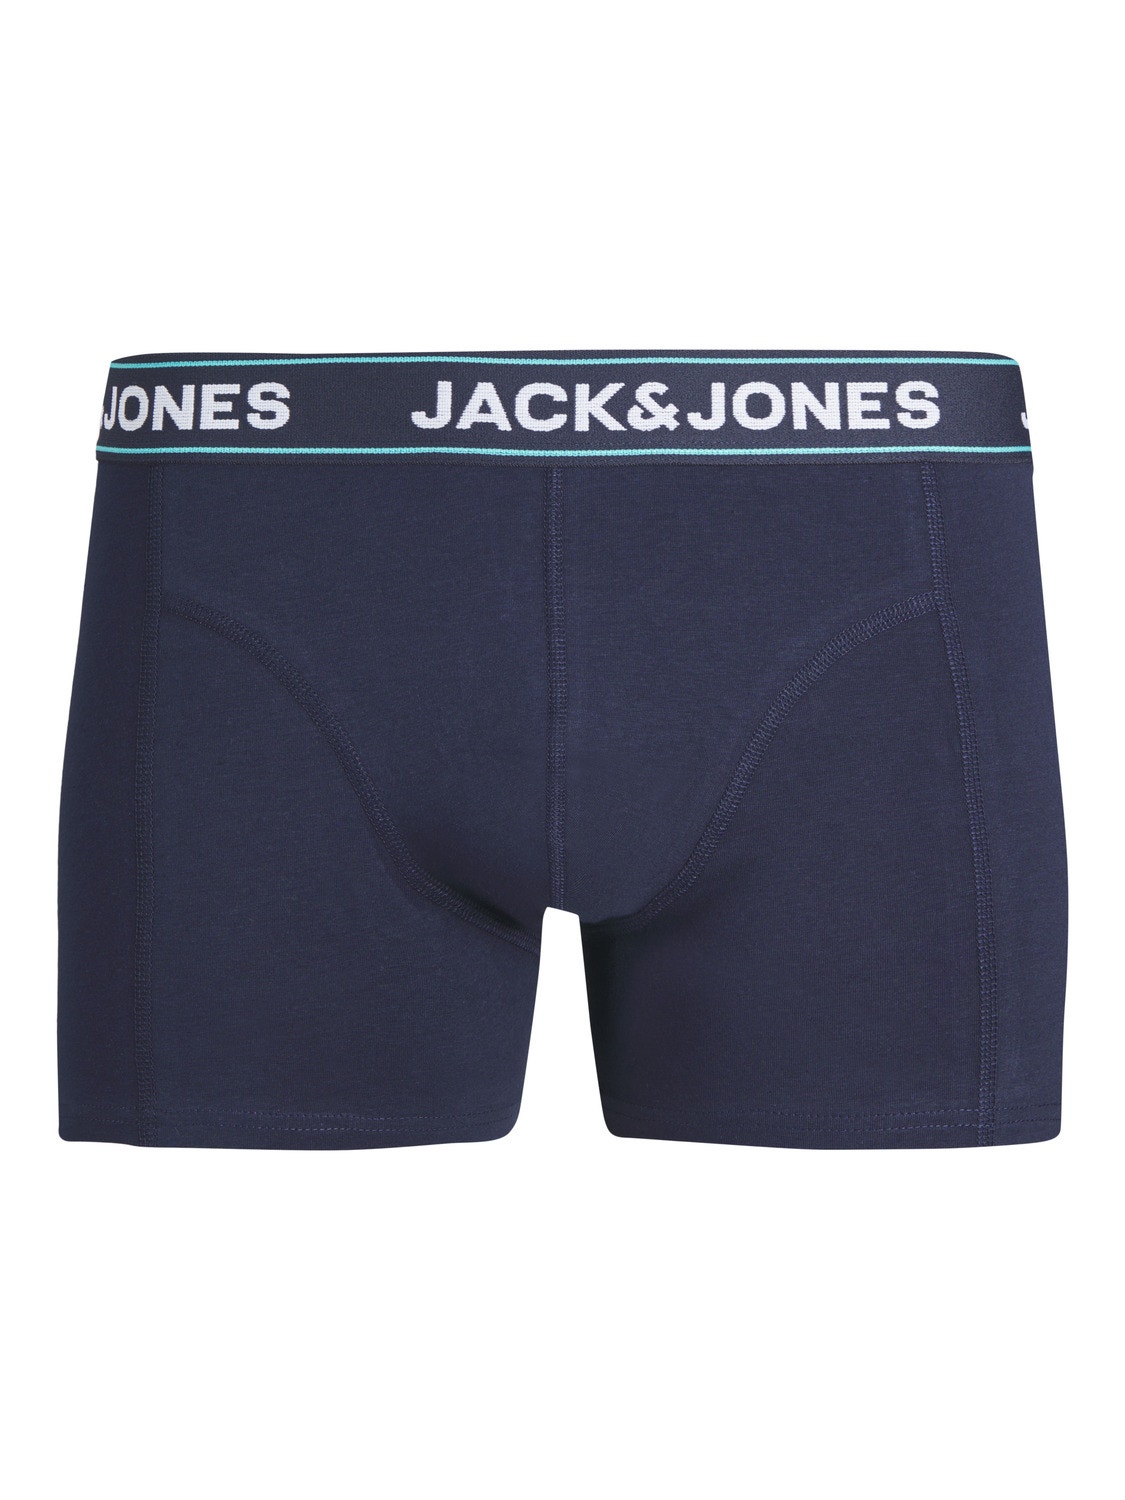 Jack & Jones 3er-pack Boxershorts Für jungs -Navy Blazer - 12253233